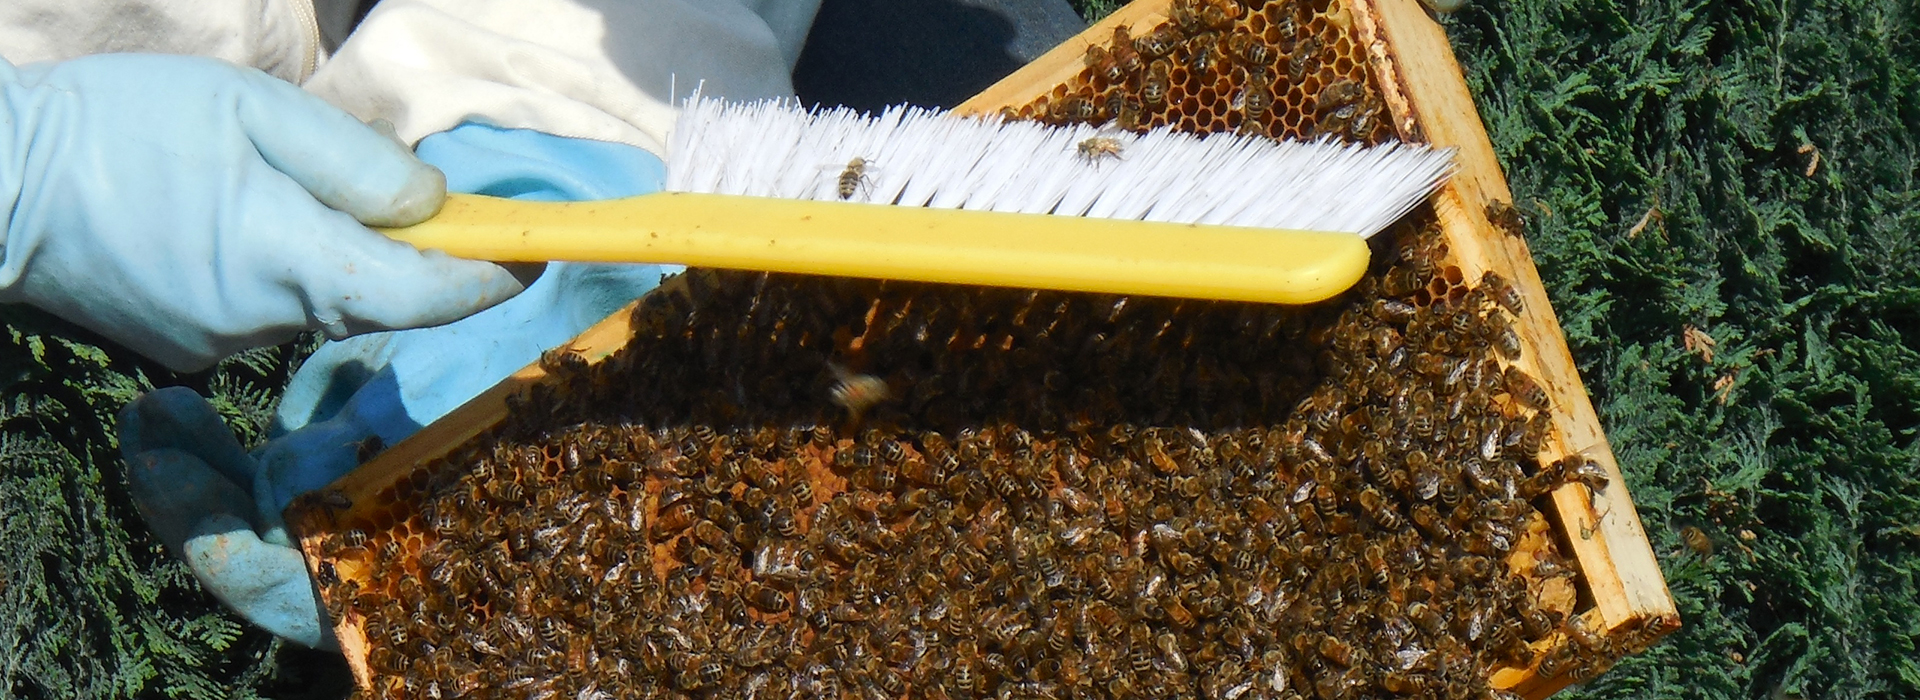 Schede tecniche dell'apicoltore